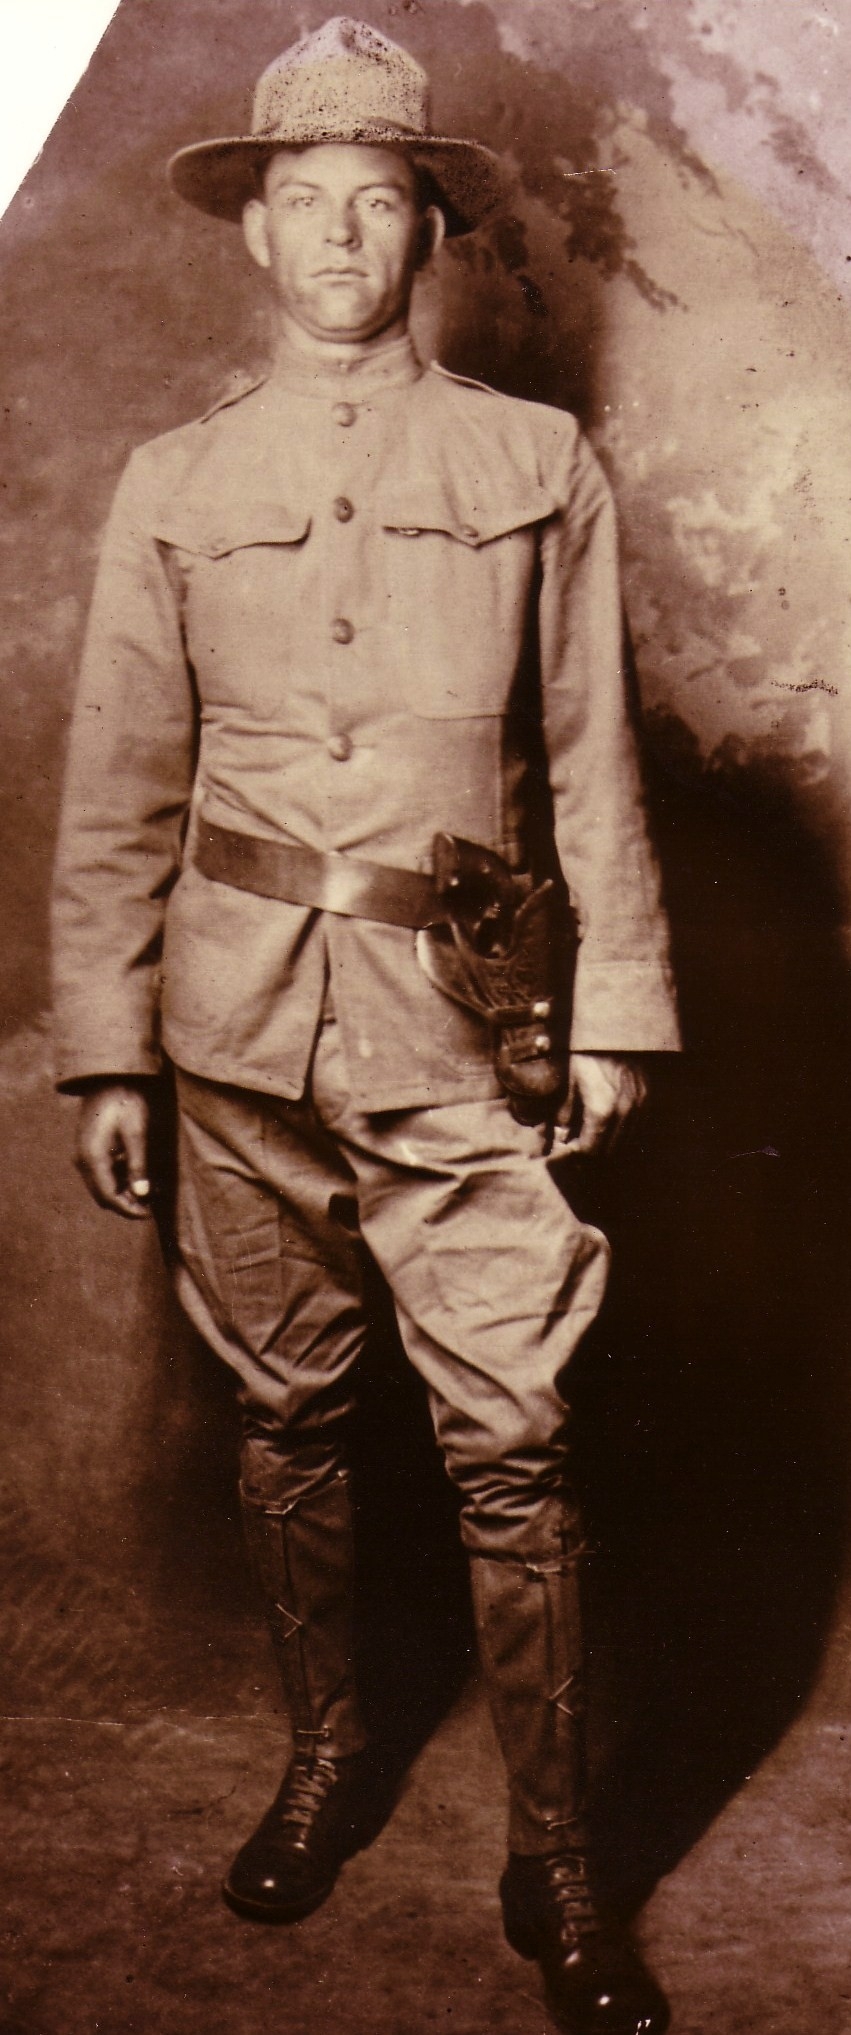 Santiago Malone, World War 1